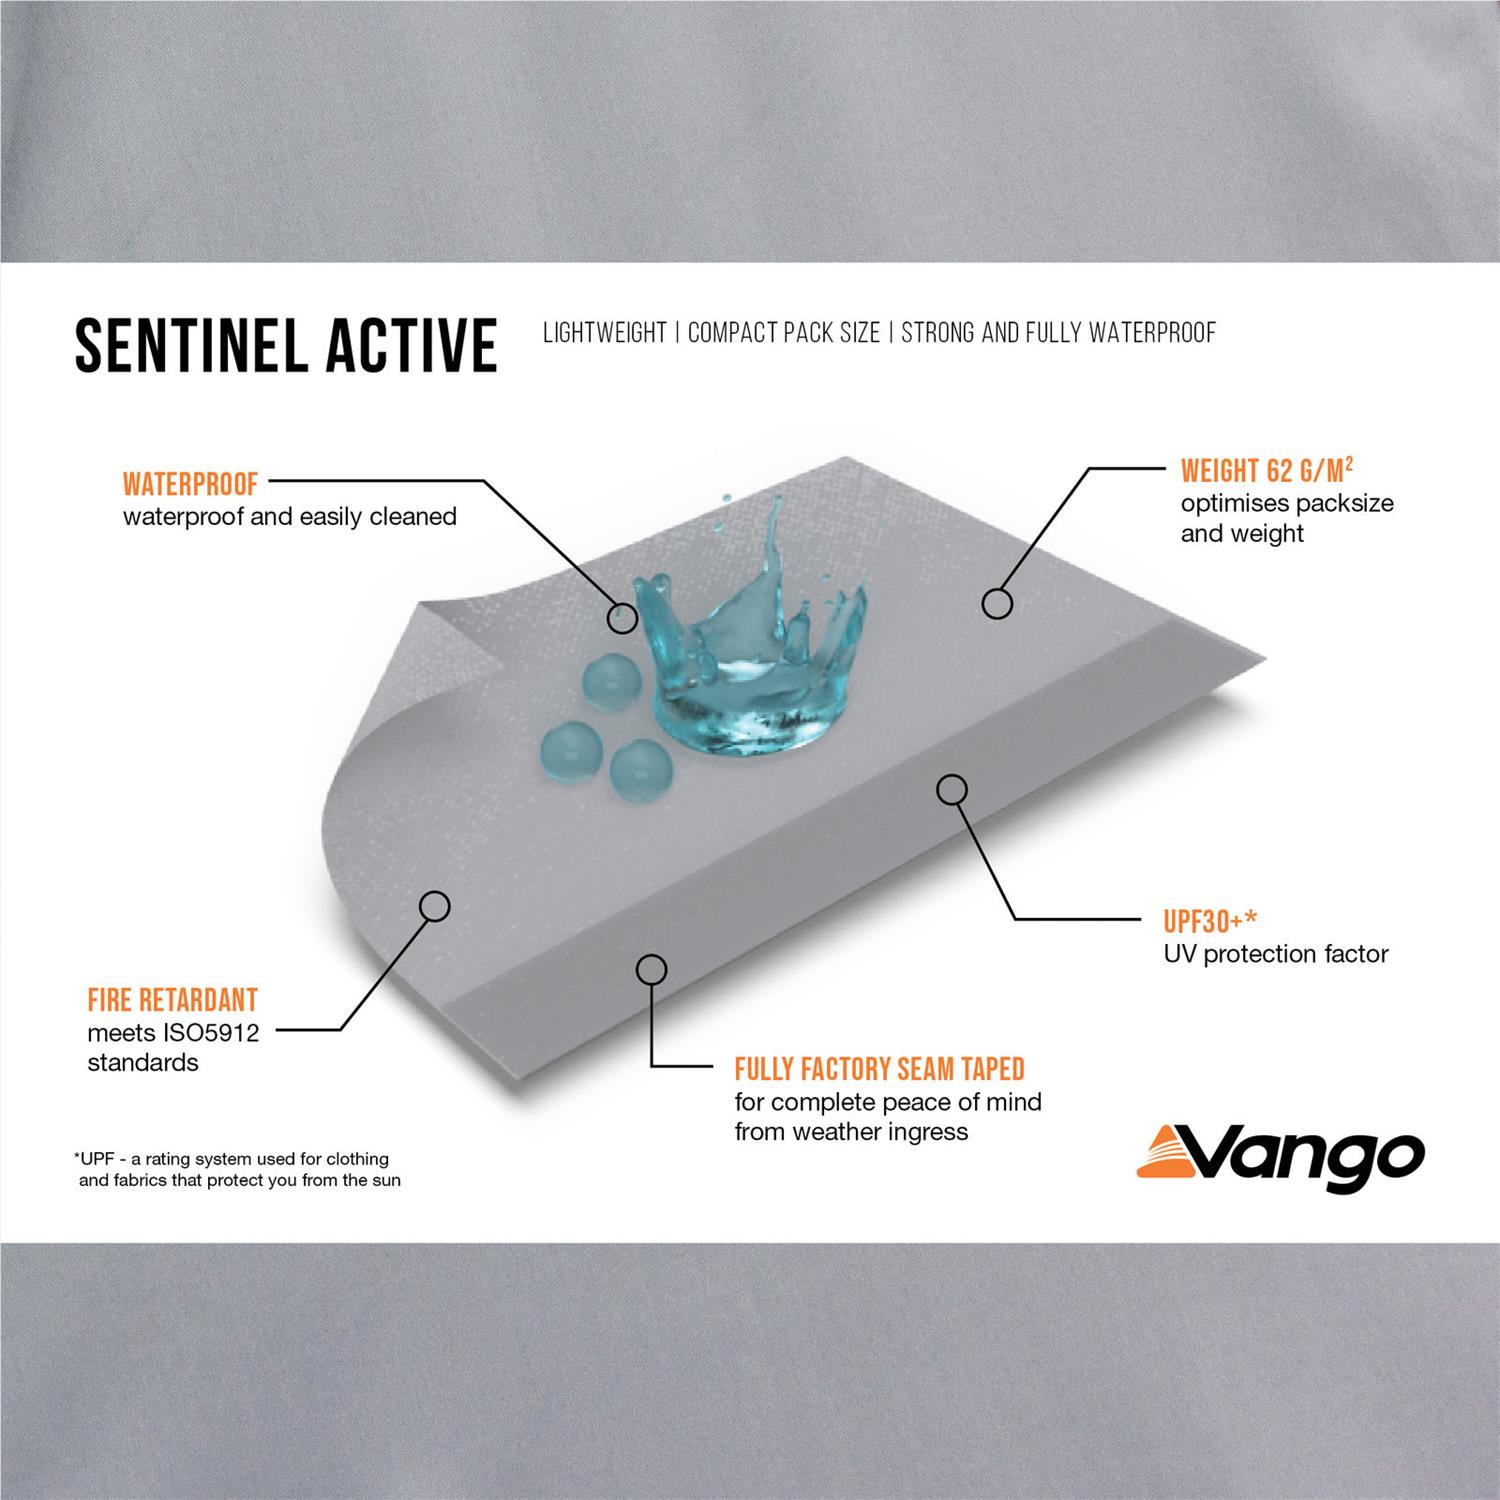 Vango's Sentinel Active Fabric.